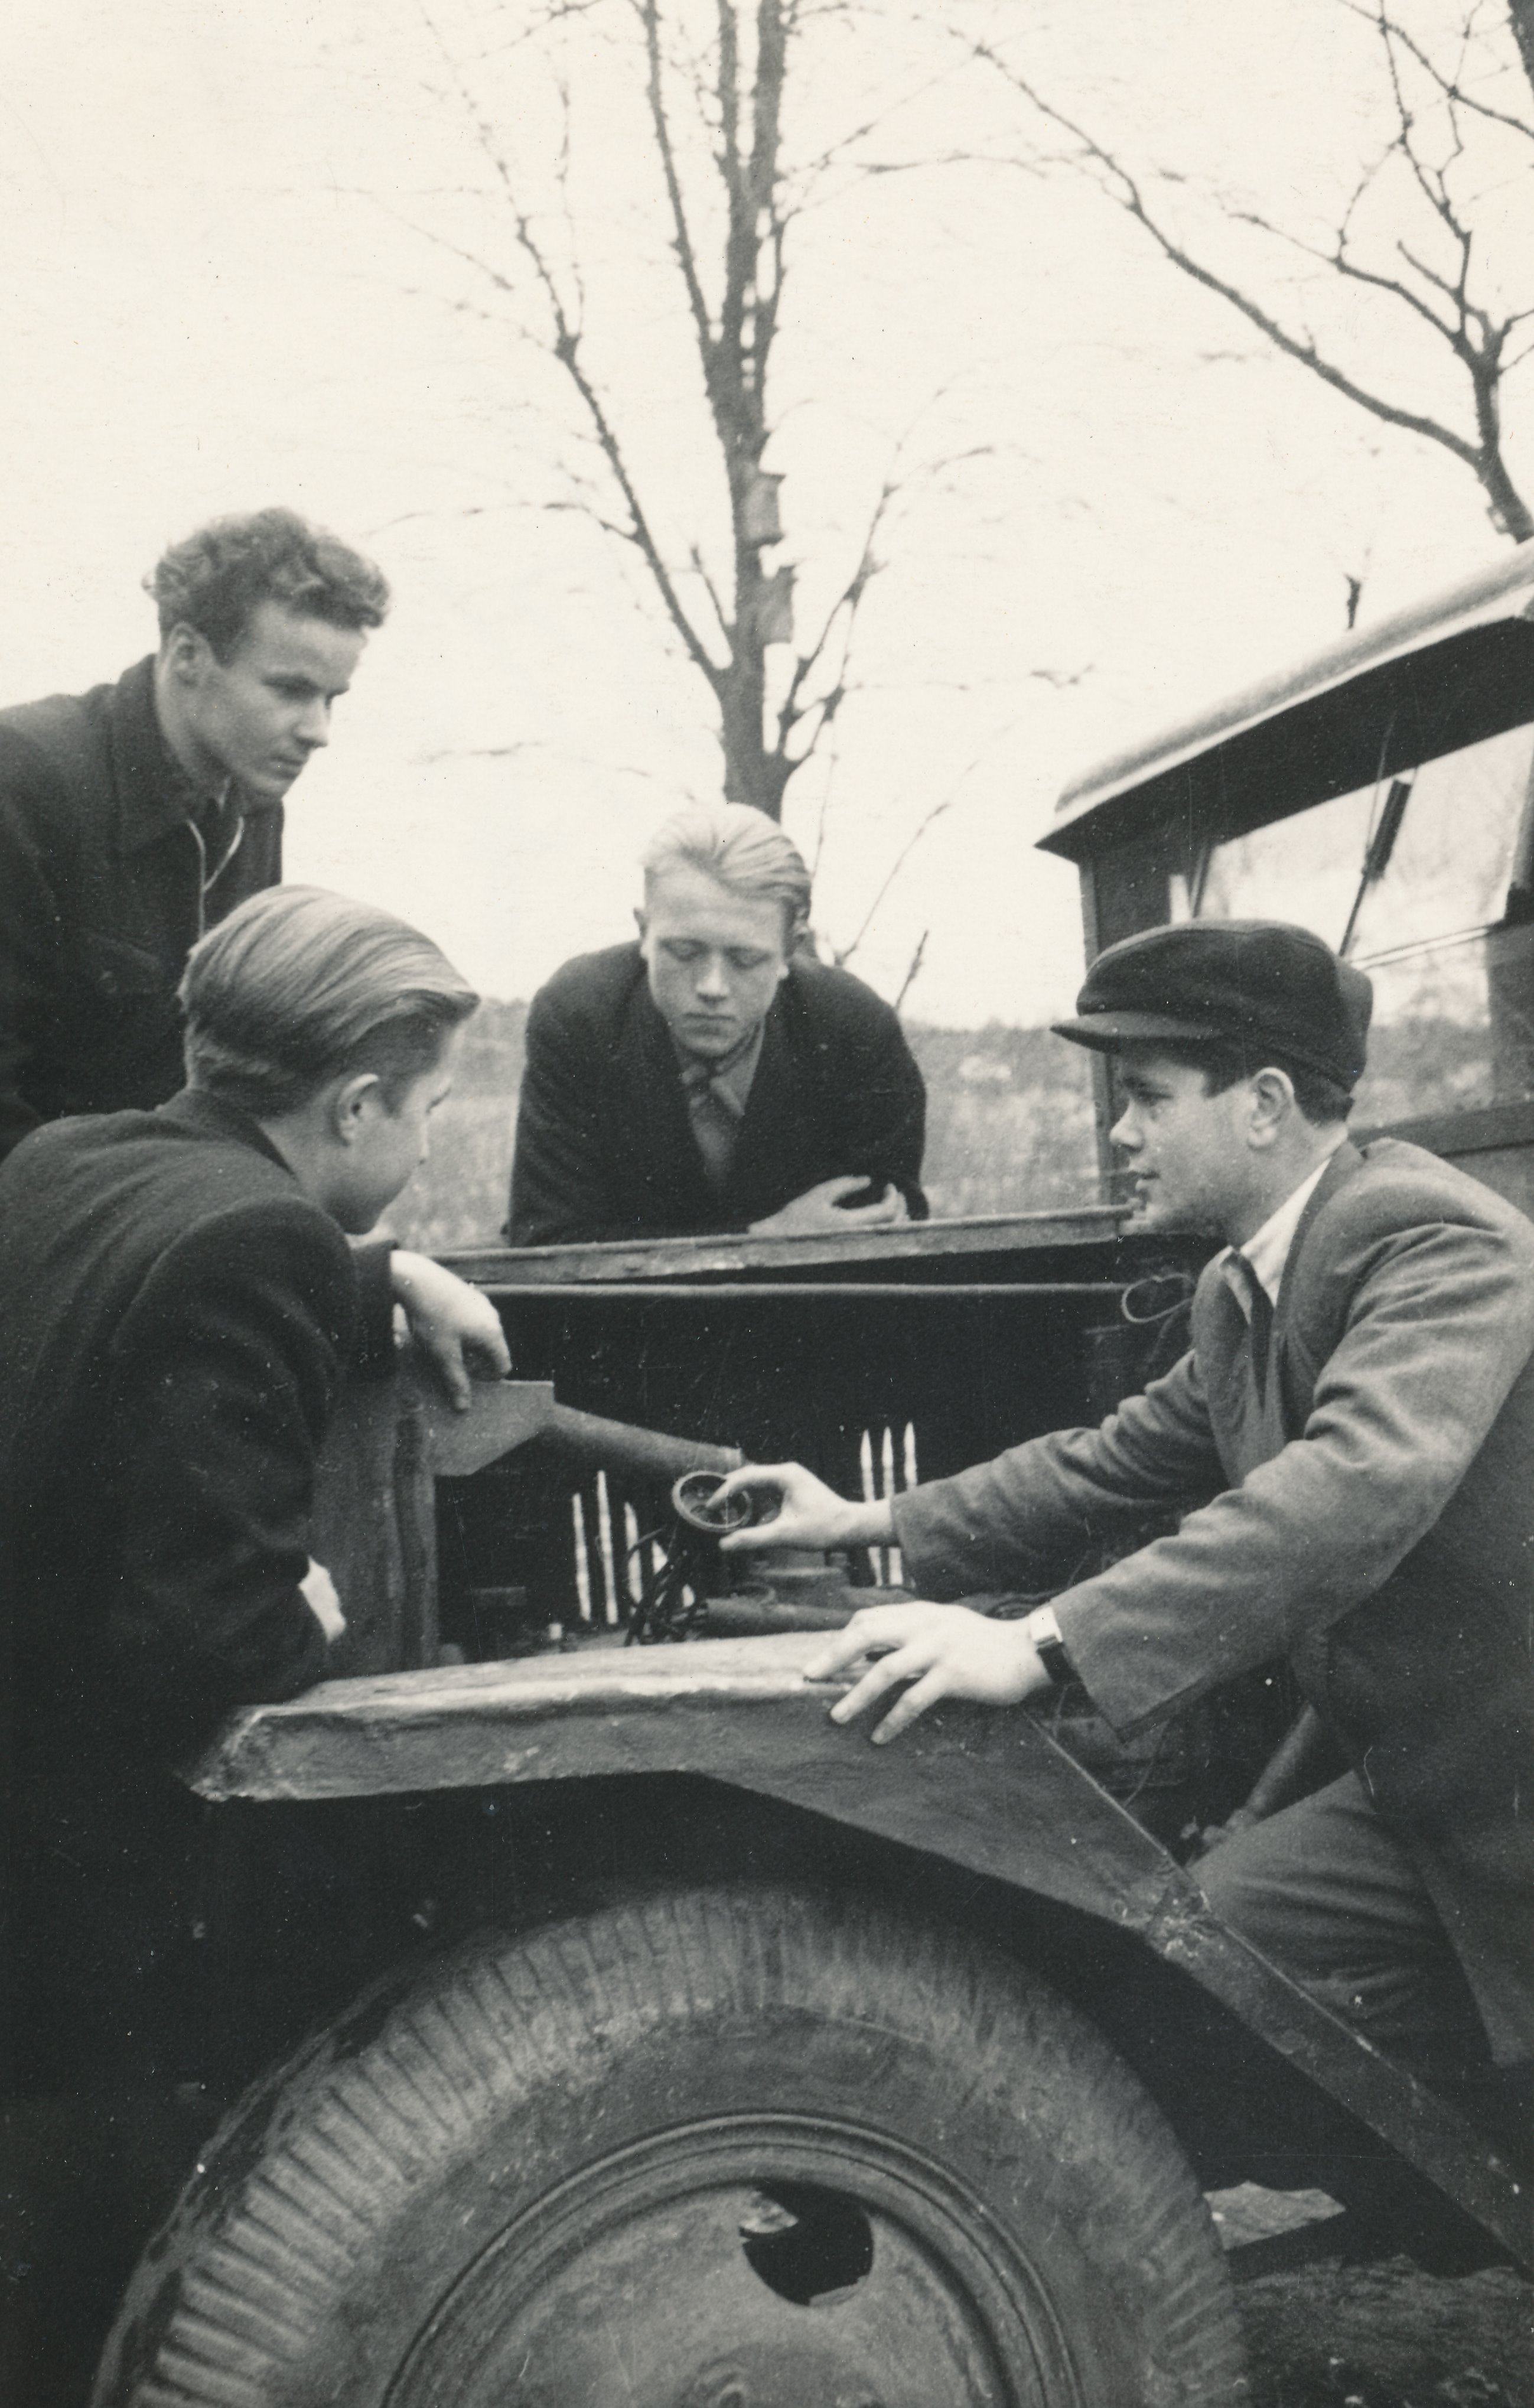 Foto. Vastseliina Keskkooli Õpetaja H. Tint tutvustab 10. klassi õpilastele automootorit novembris 1955.a.